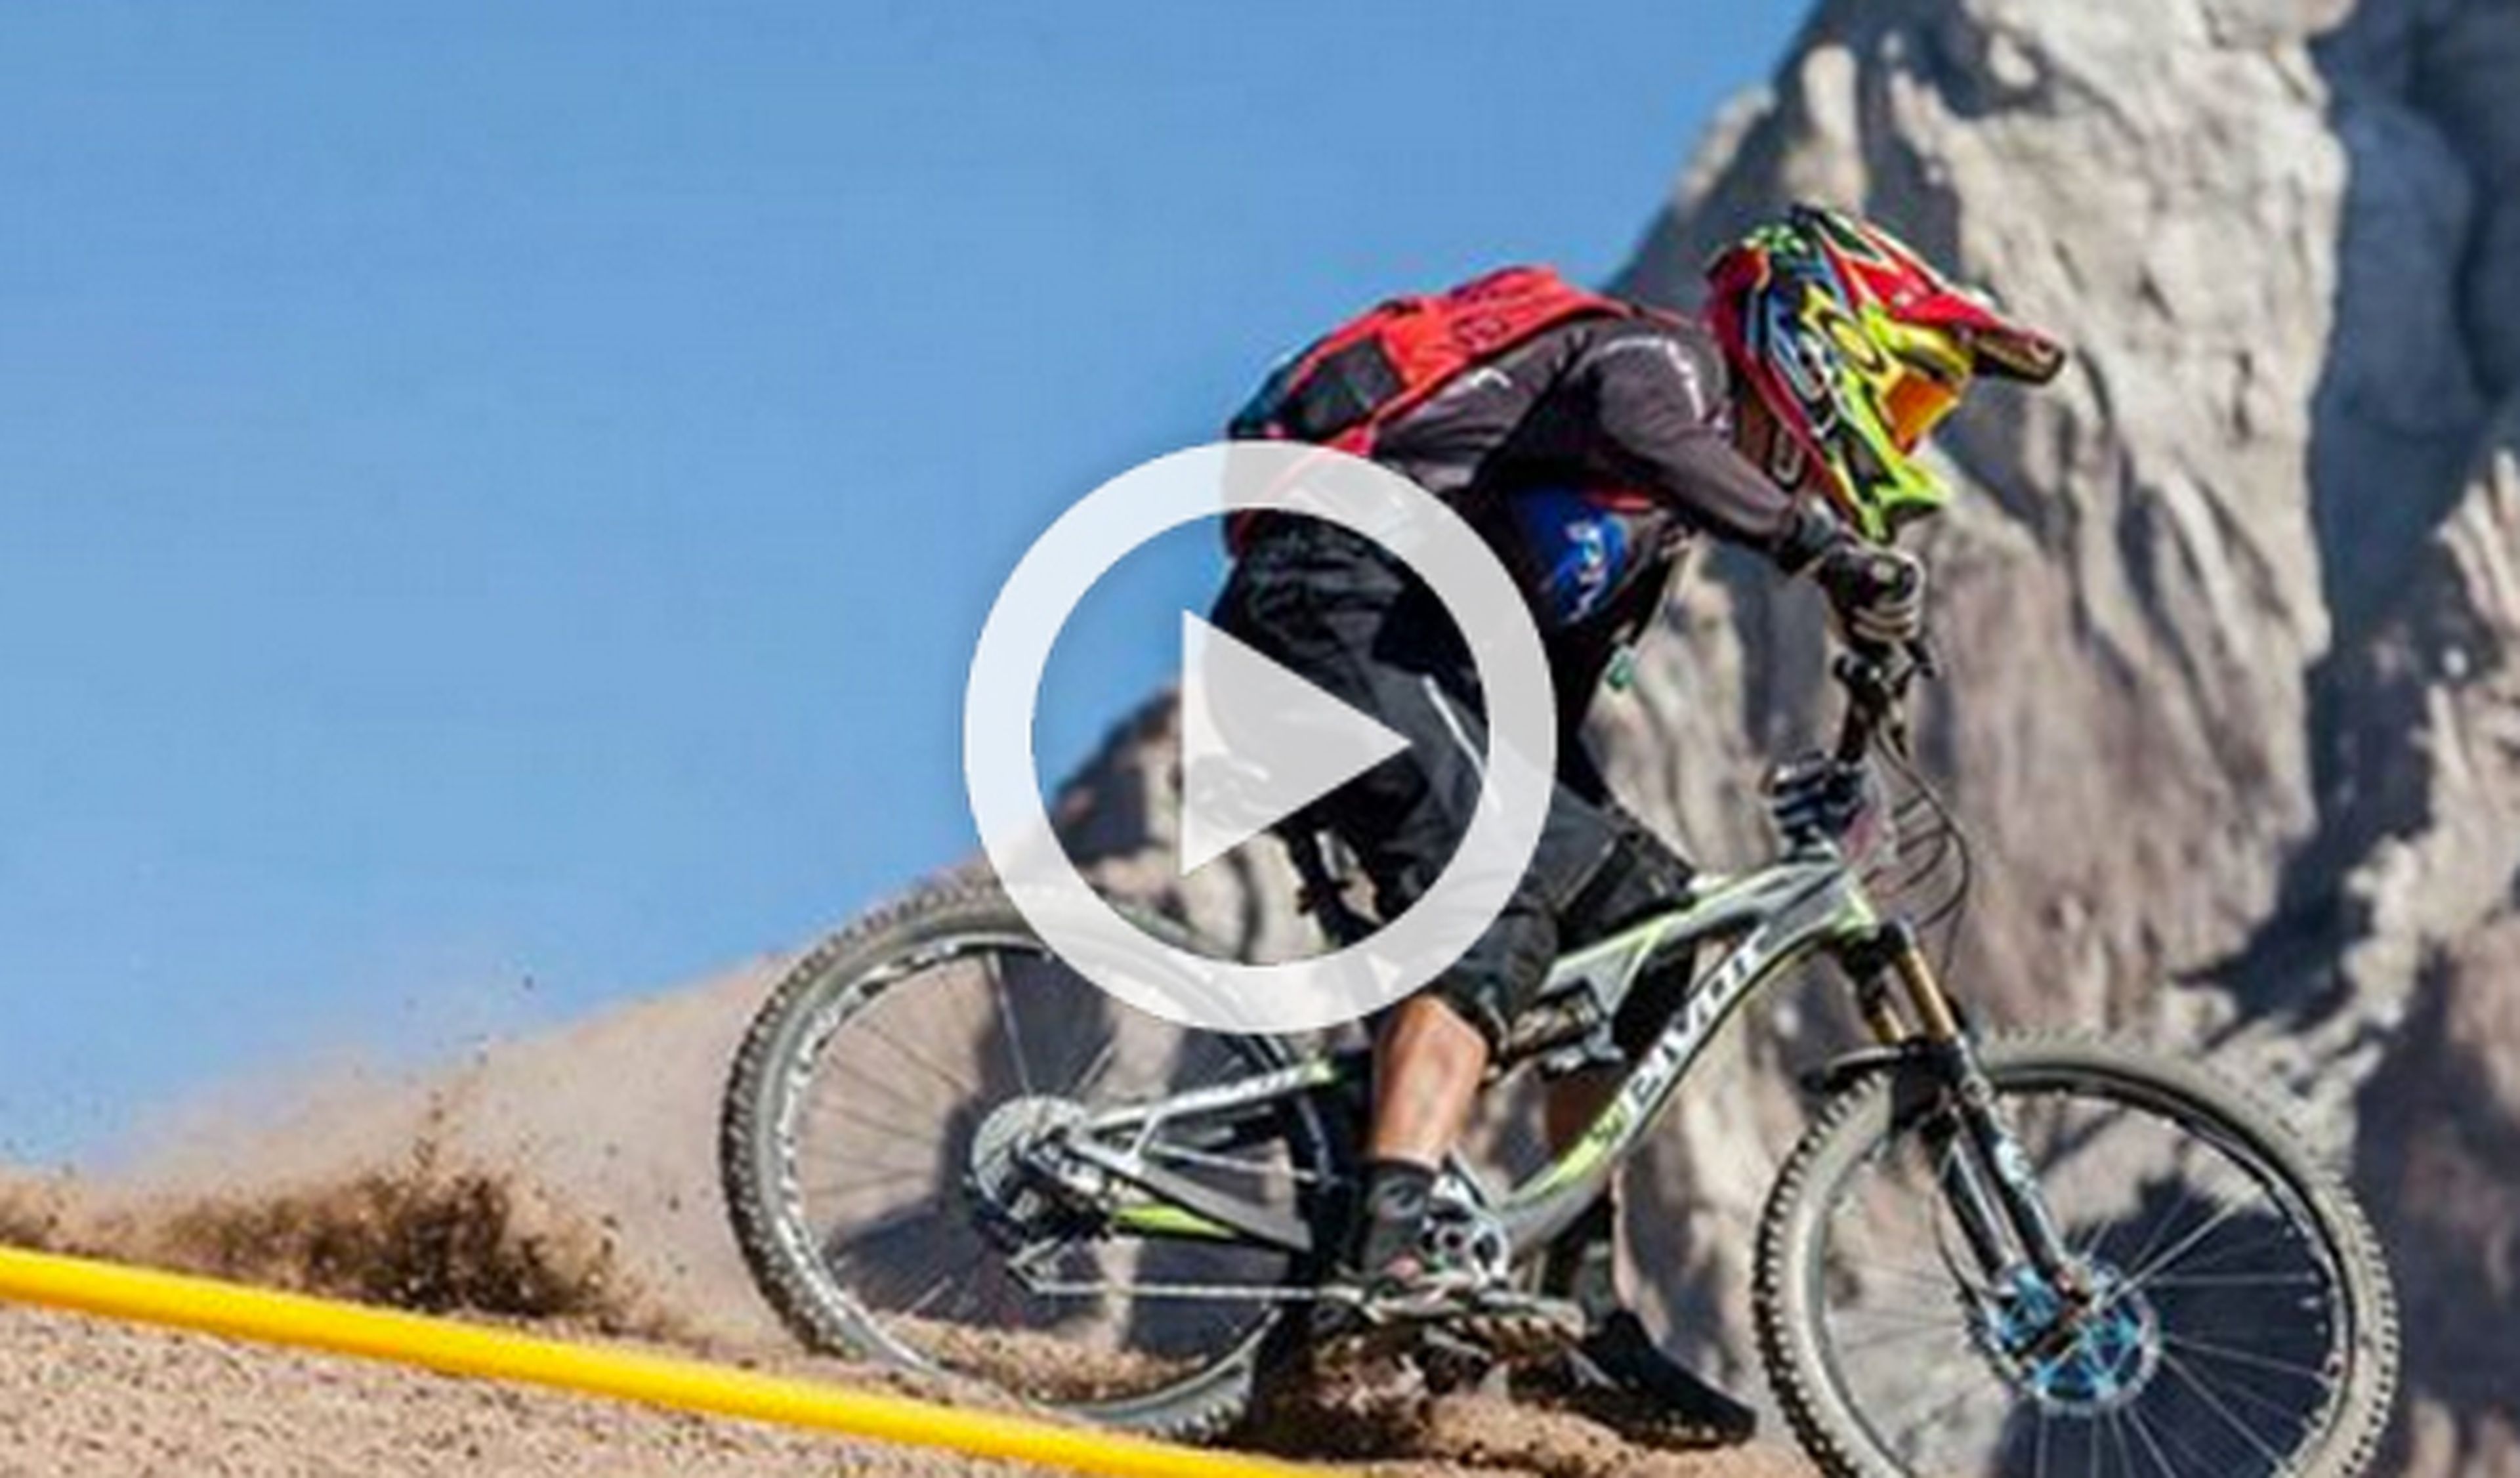 El descenso de mountain bike más largo del mundo